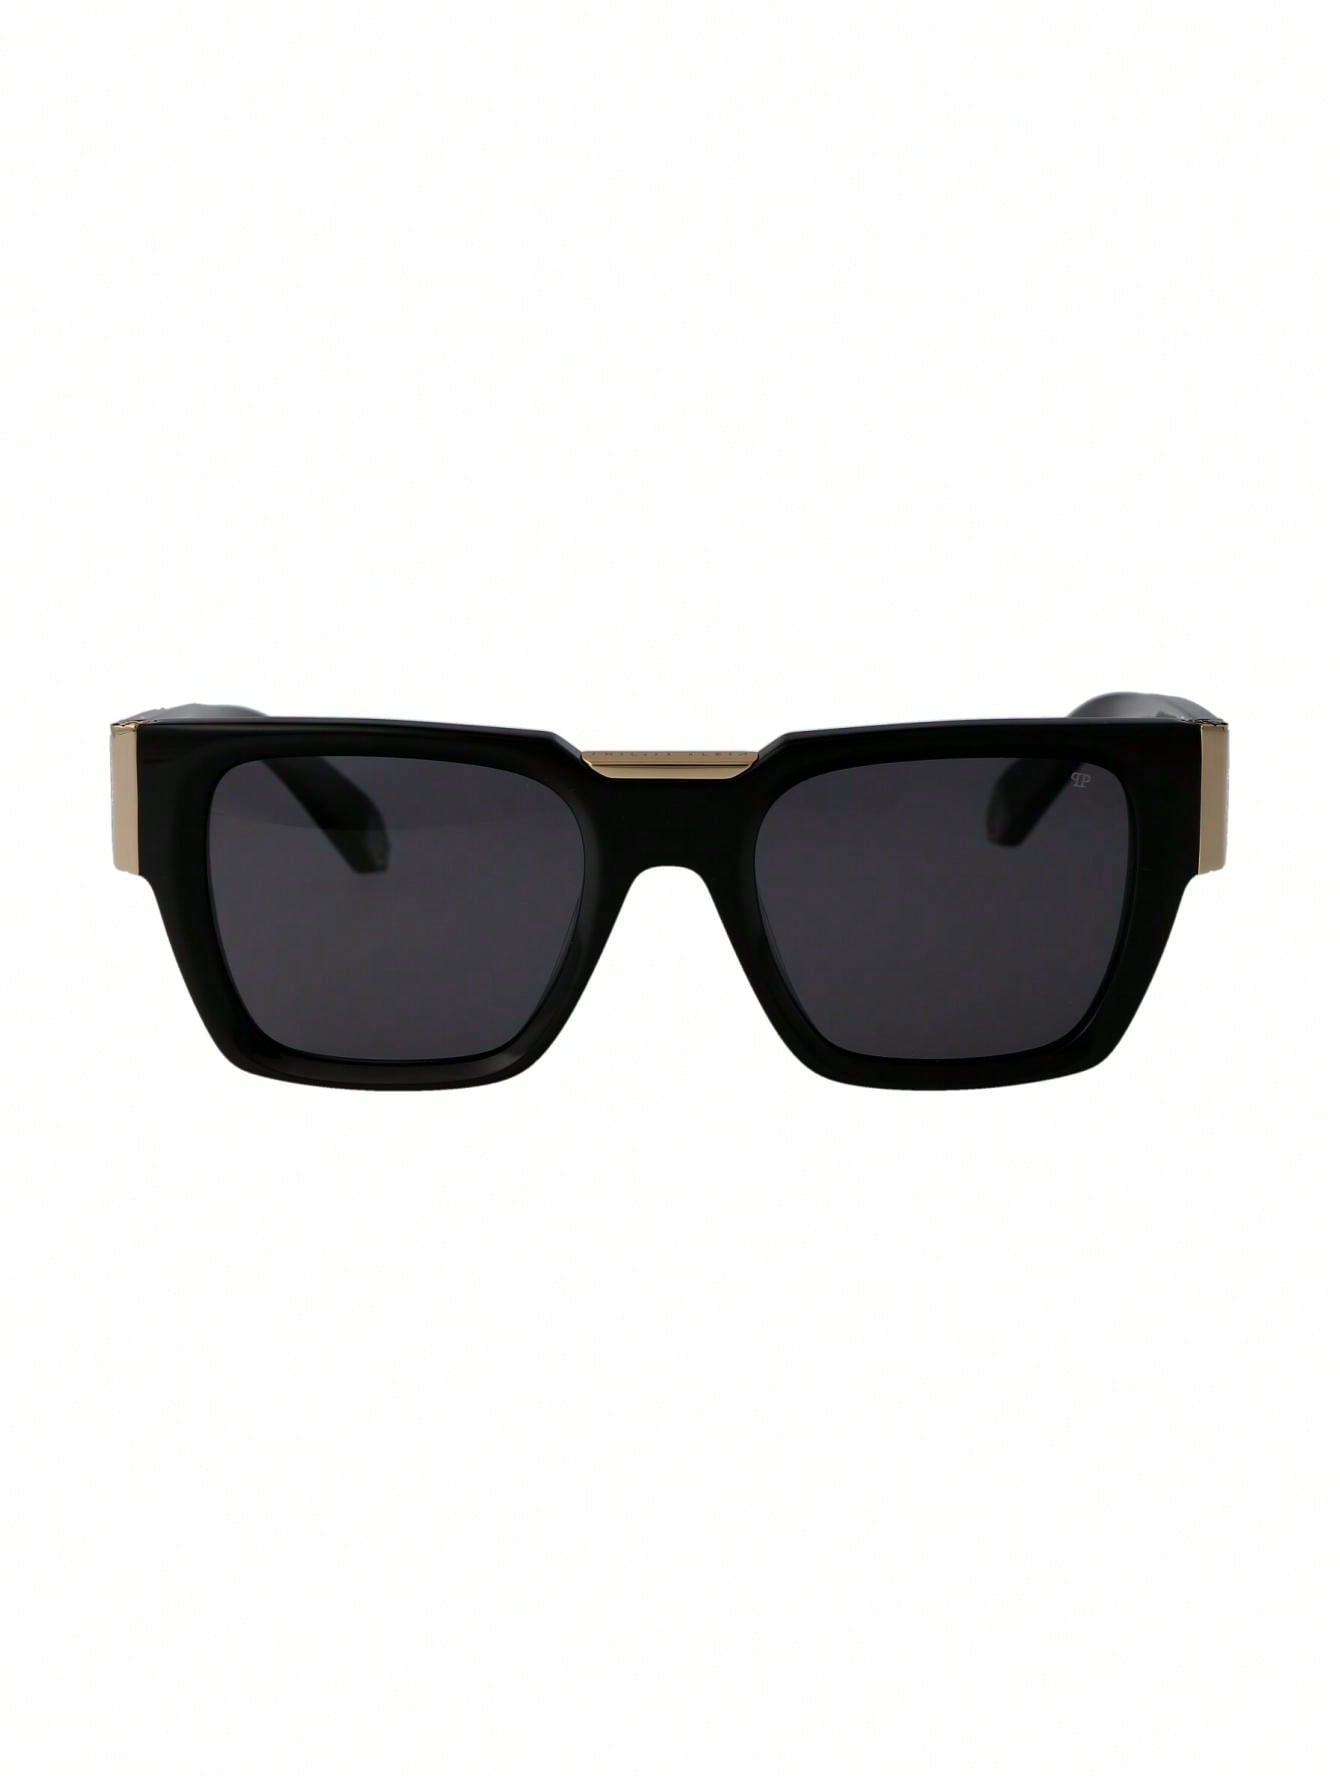 Мужские солнцезащитные очки Philipp Plein DECOR SPP095M0700, многоцветный